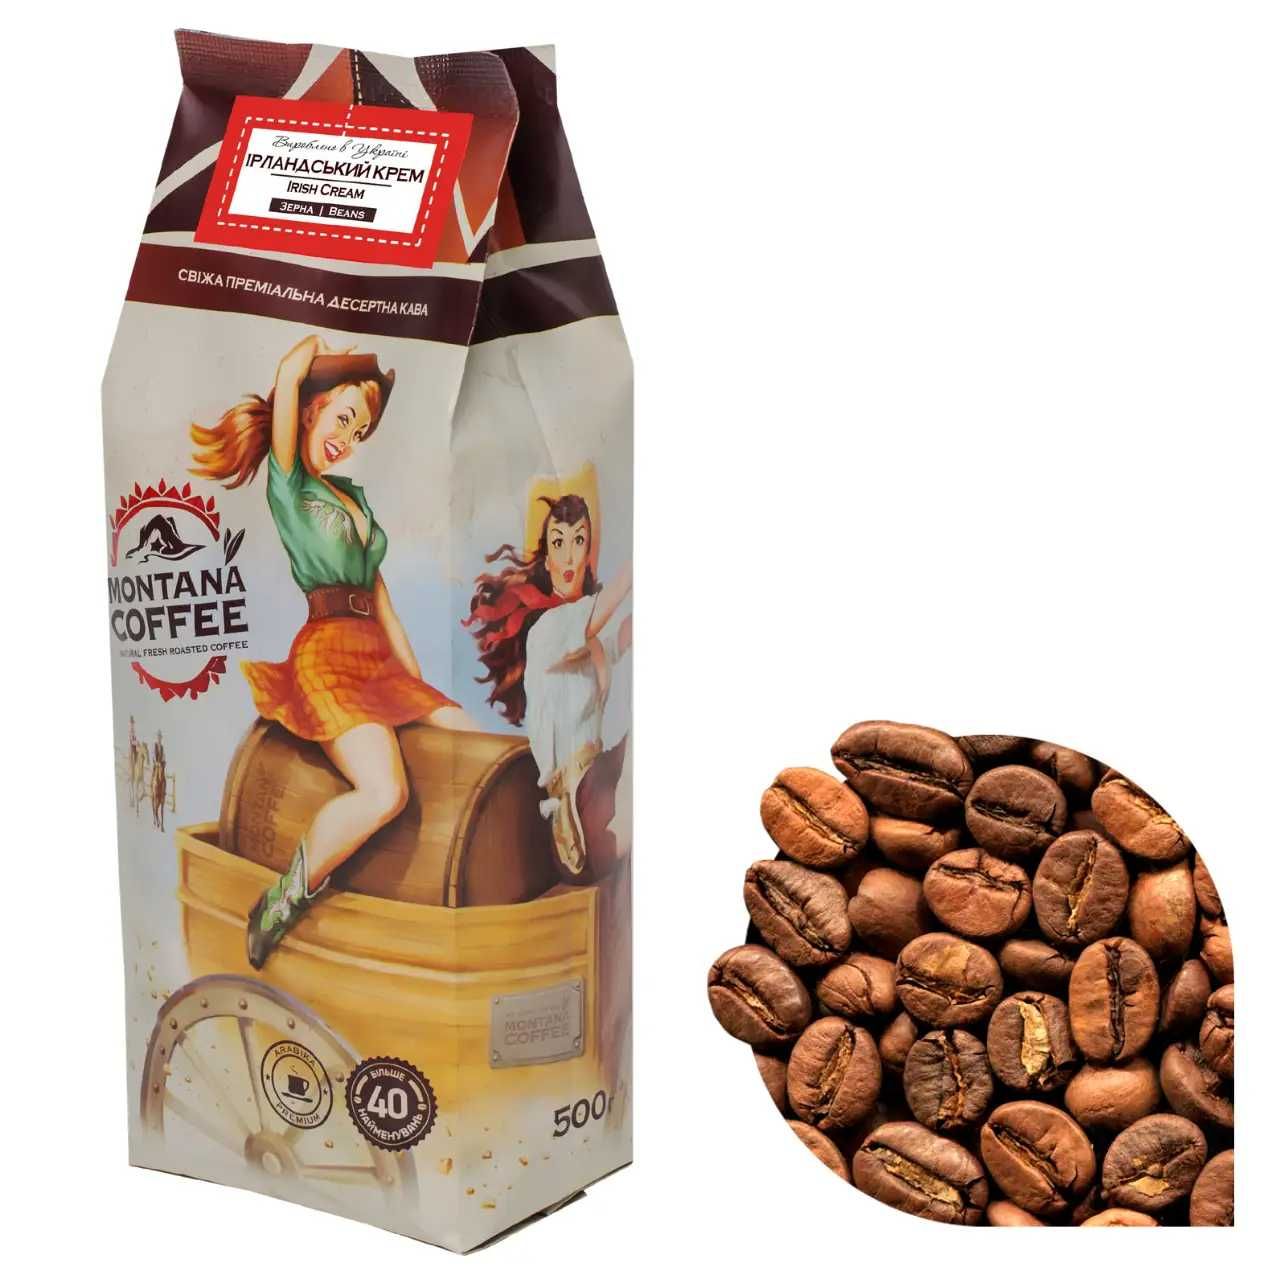 Кофе в зернах Montana Coffee "Ирландский крем" 100% арабика 0,5 кг